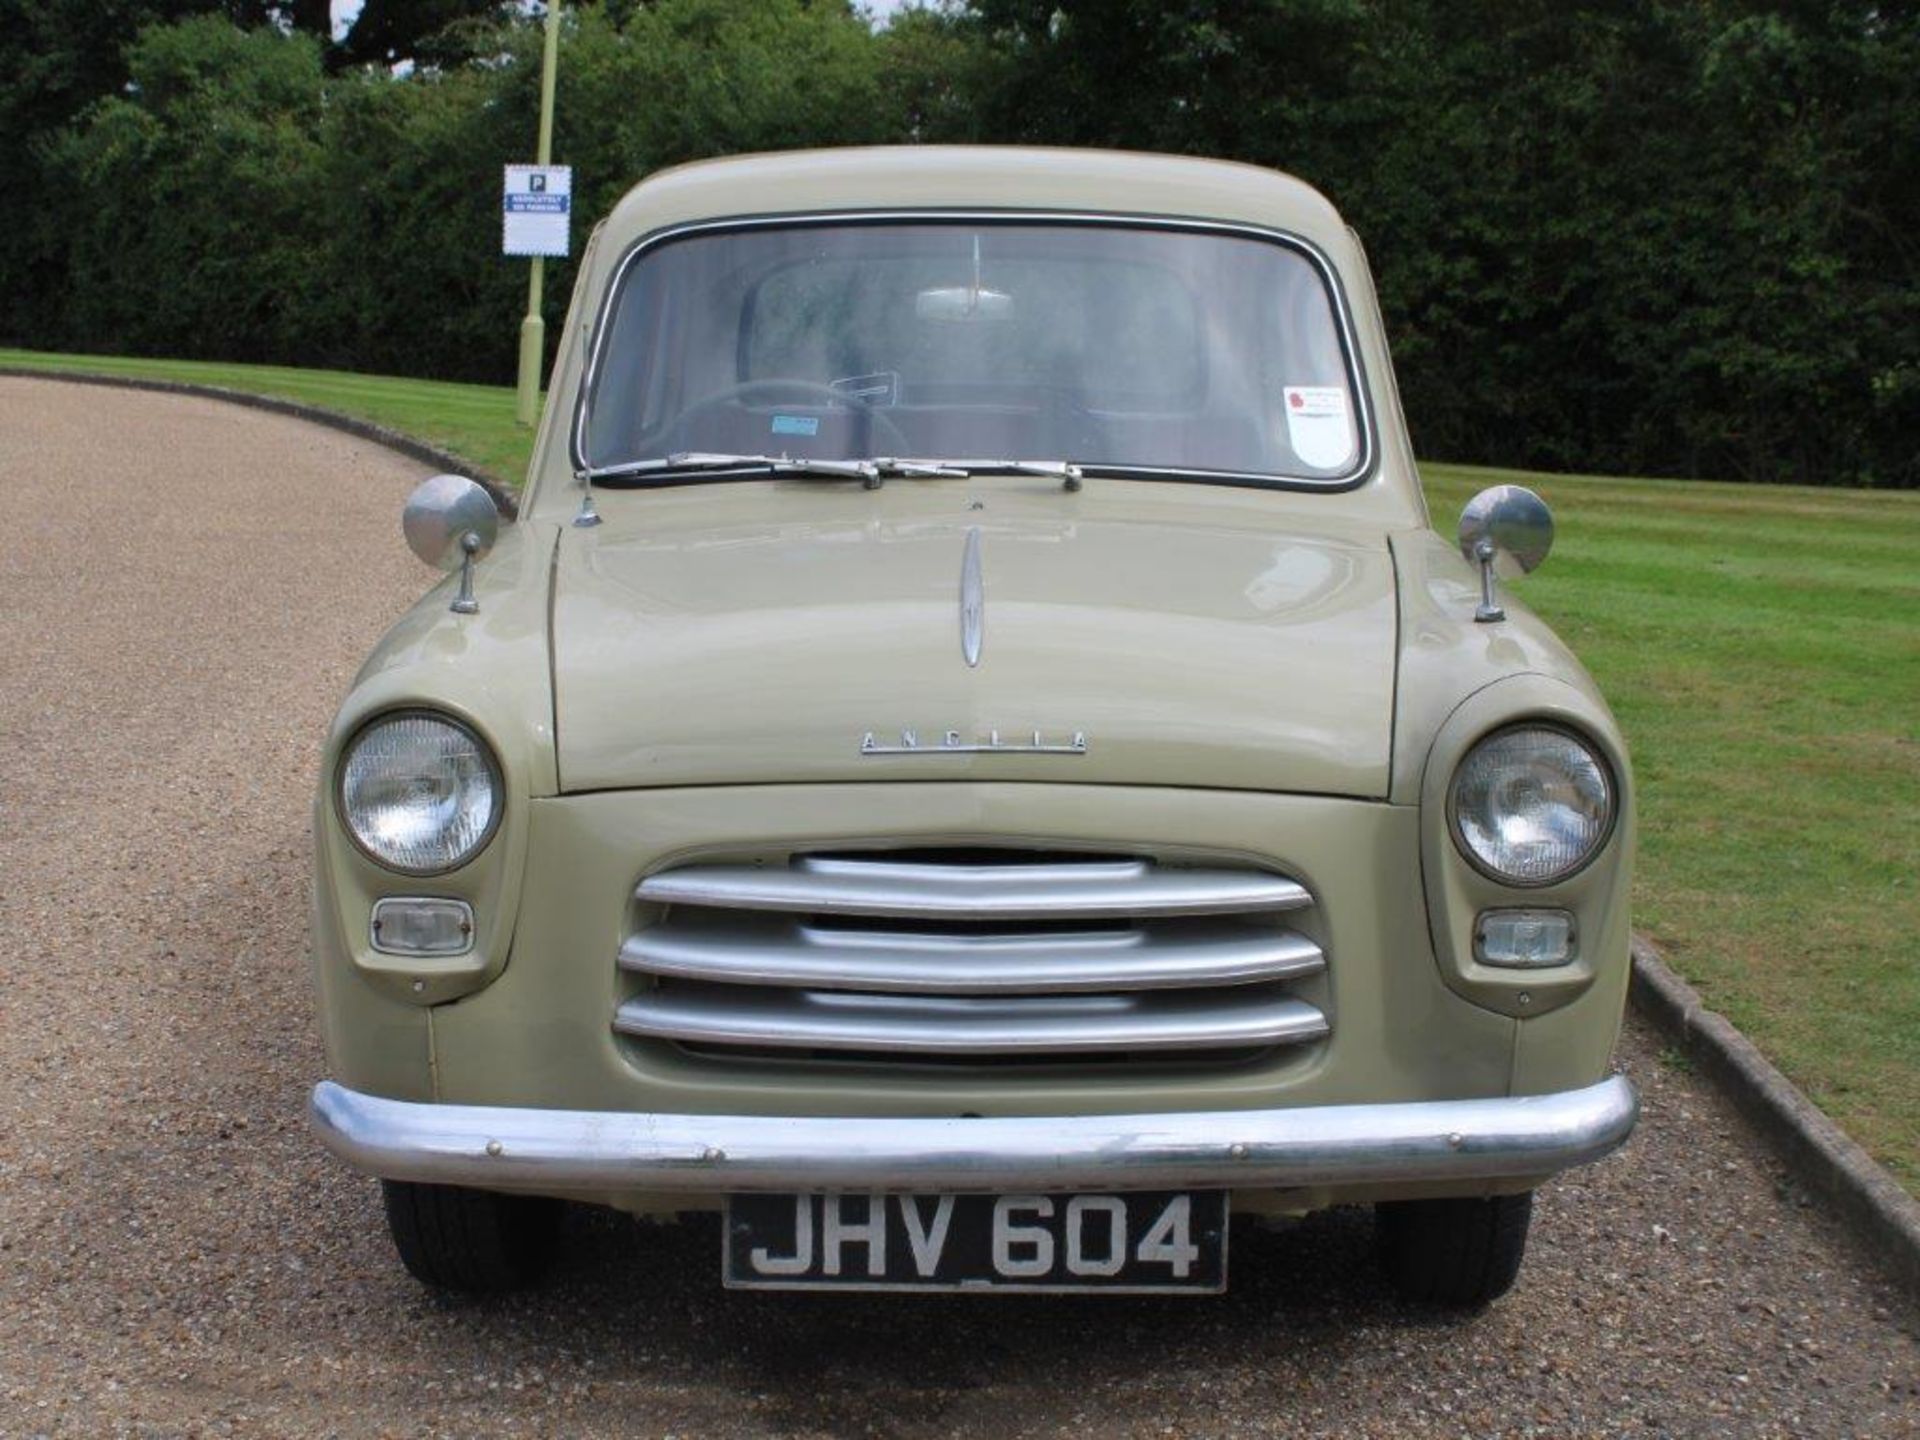 1955 Ford Anglia 100E - Image 2 of 17